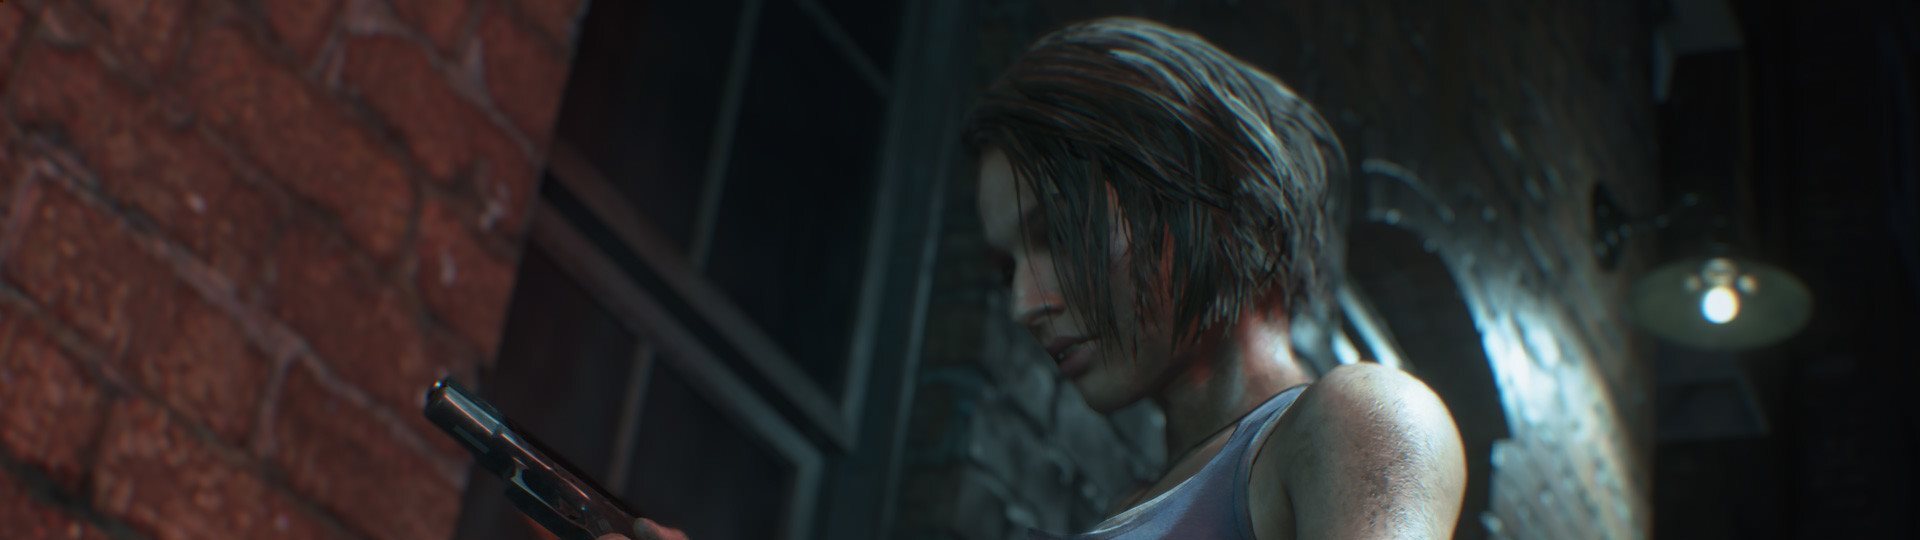 Resident Evil 3 šikovně využívá barevný pásek na DualSense ovladači | Novinky